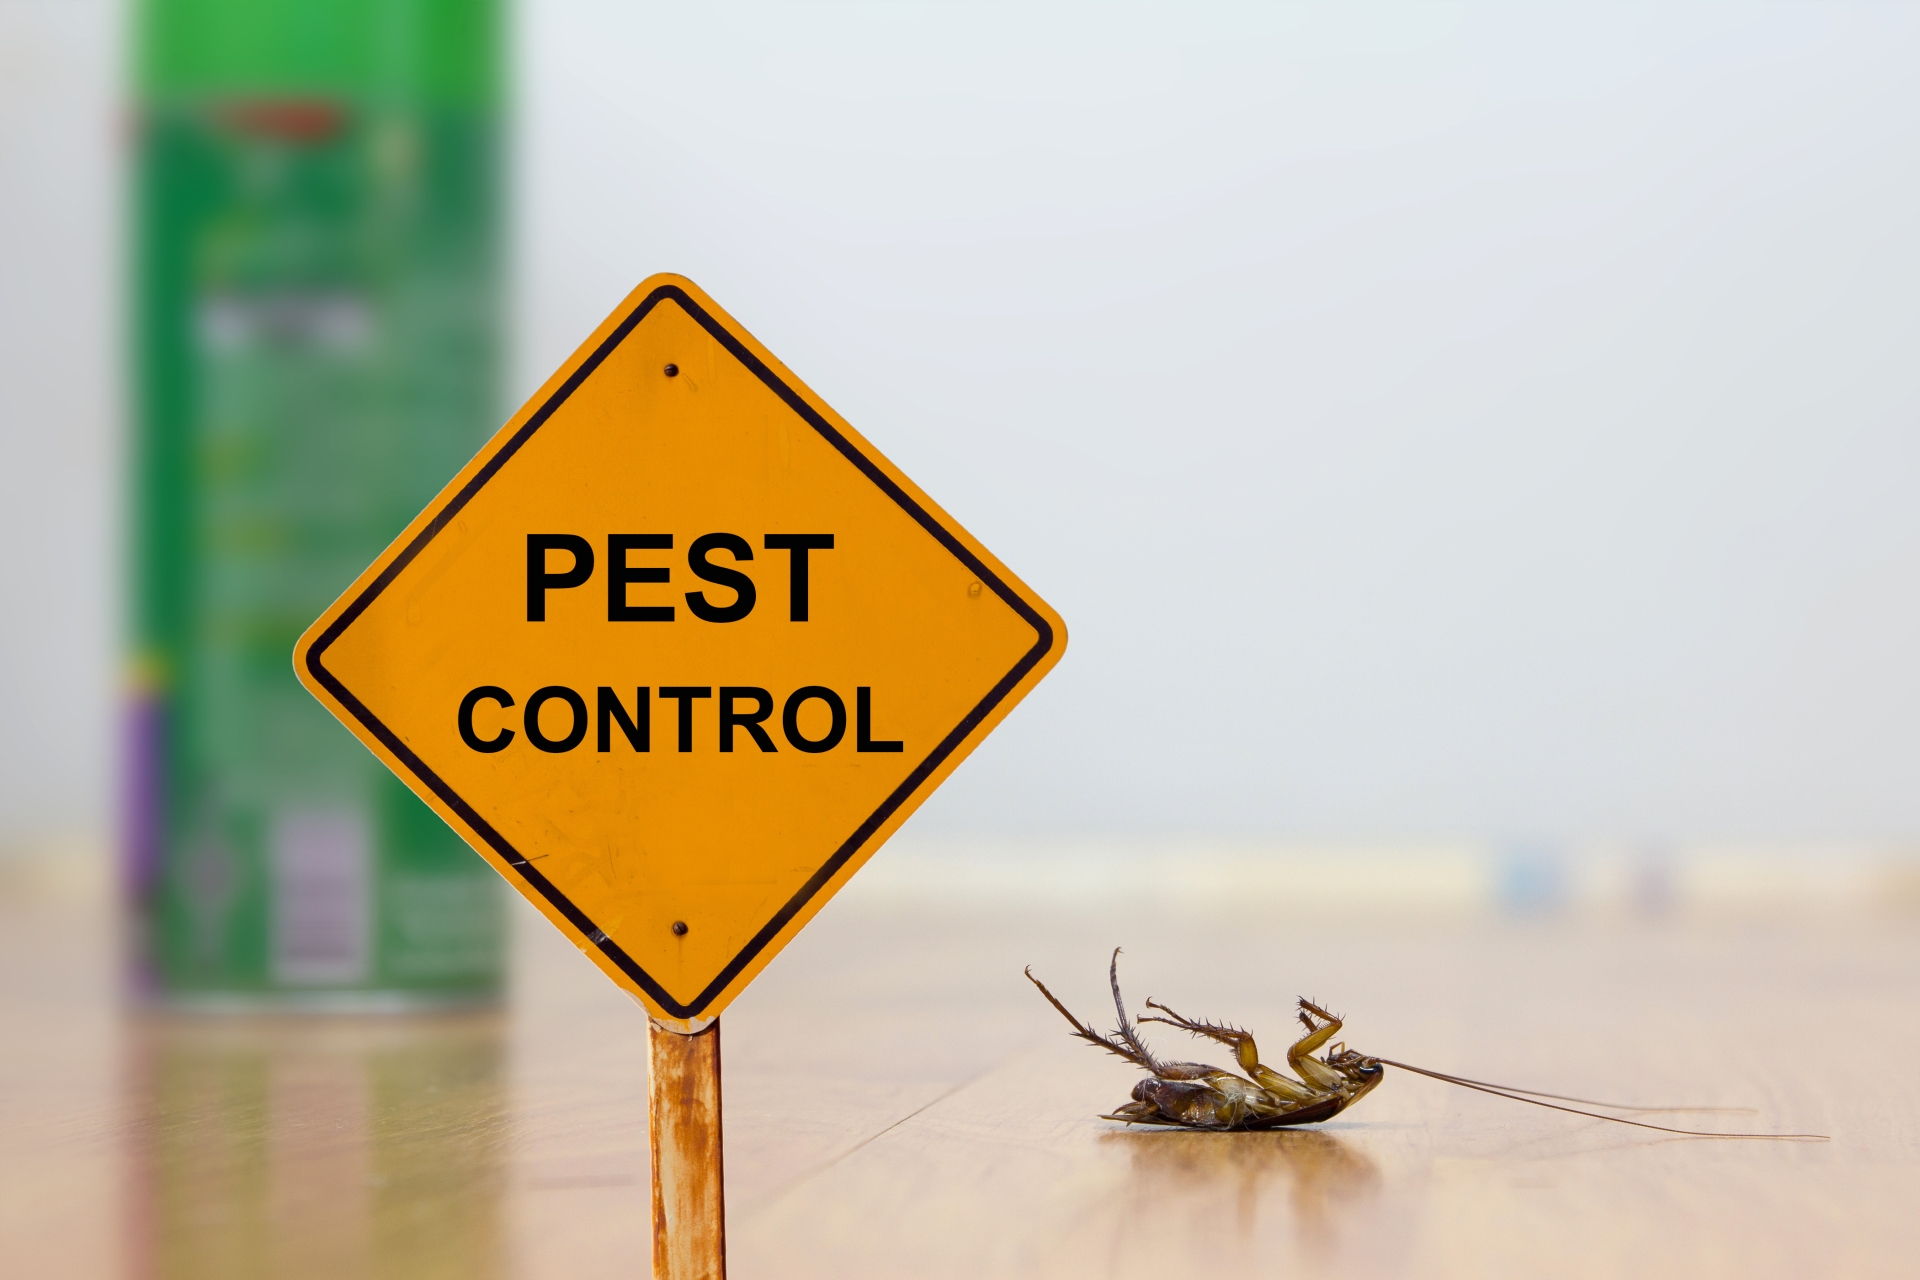 24 Hour Pest Control, Pest Control in Bexley, DA5. Call Now 020 8166 9746